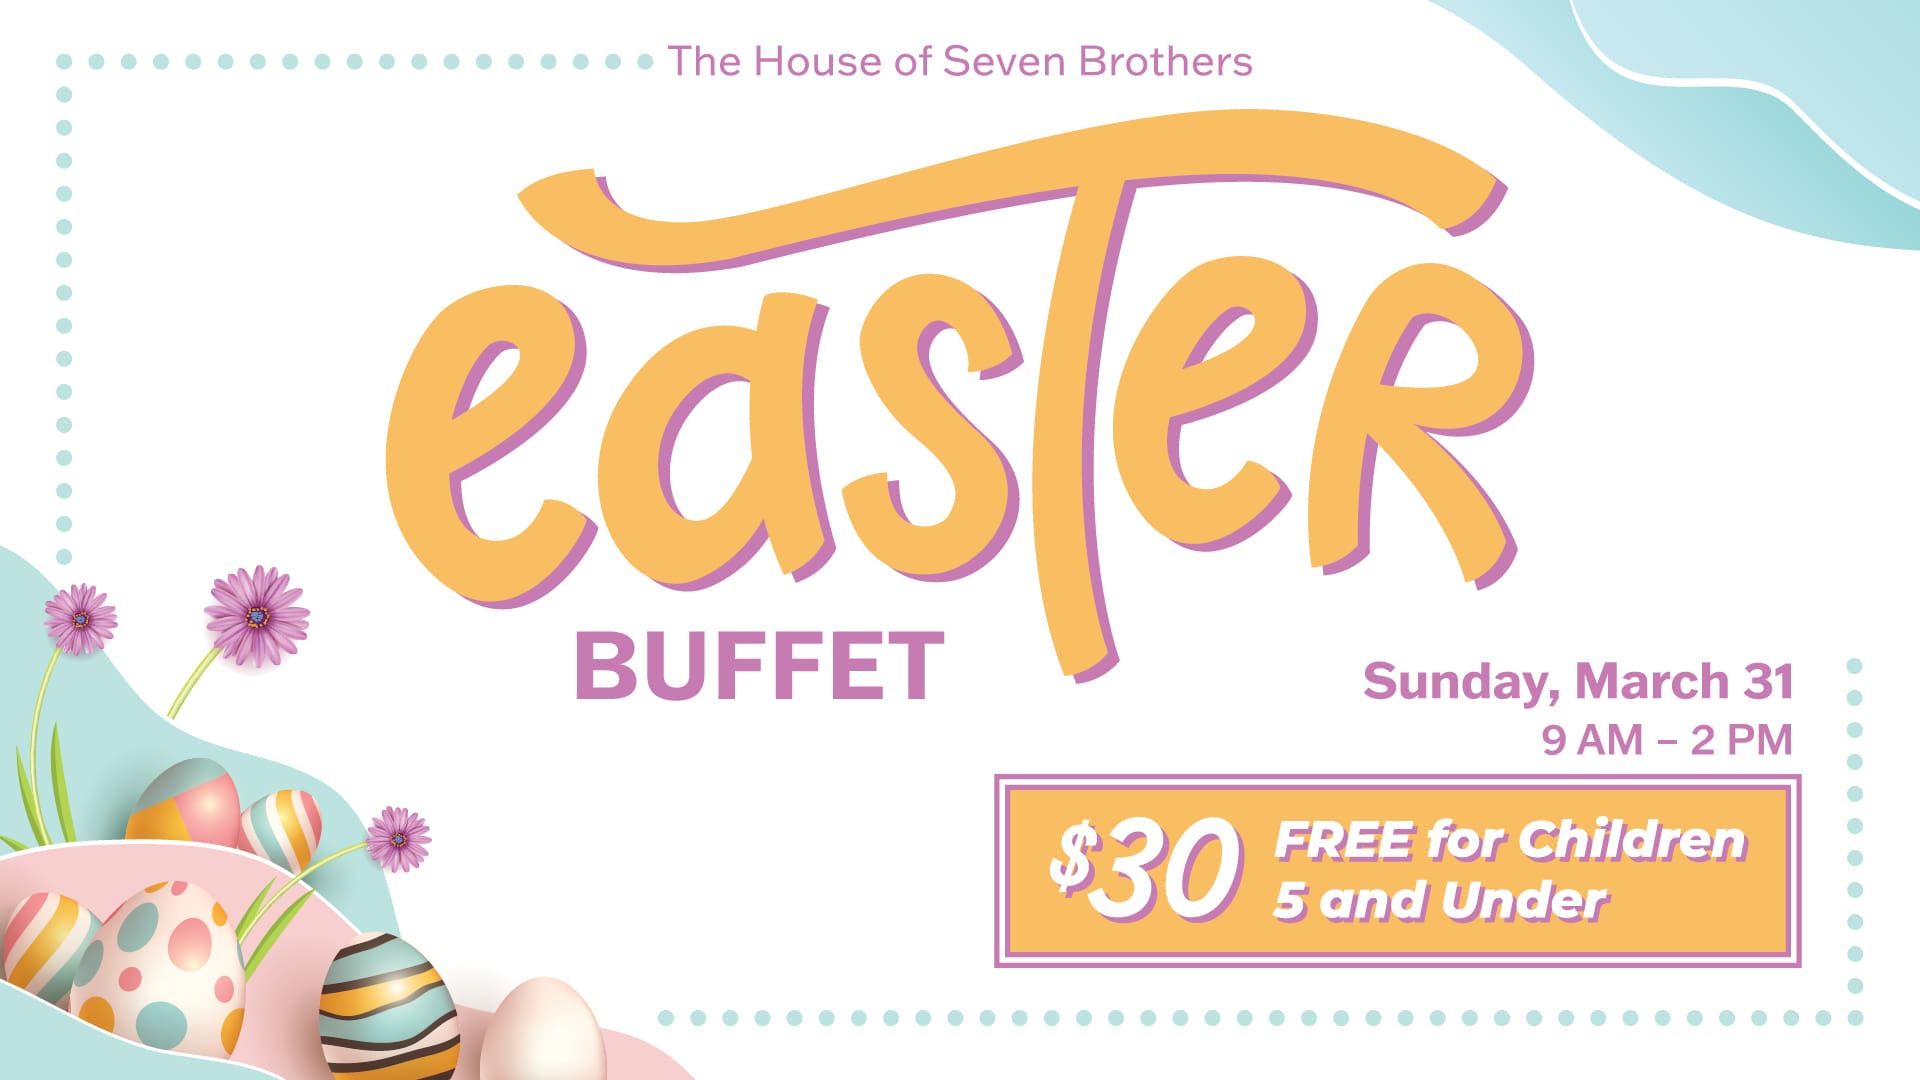 Easter Buffet